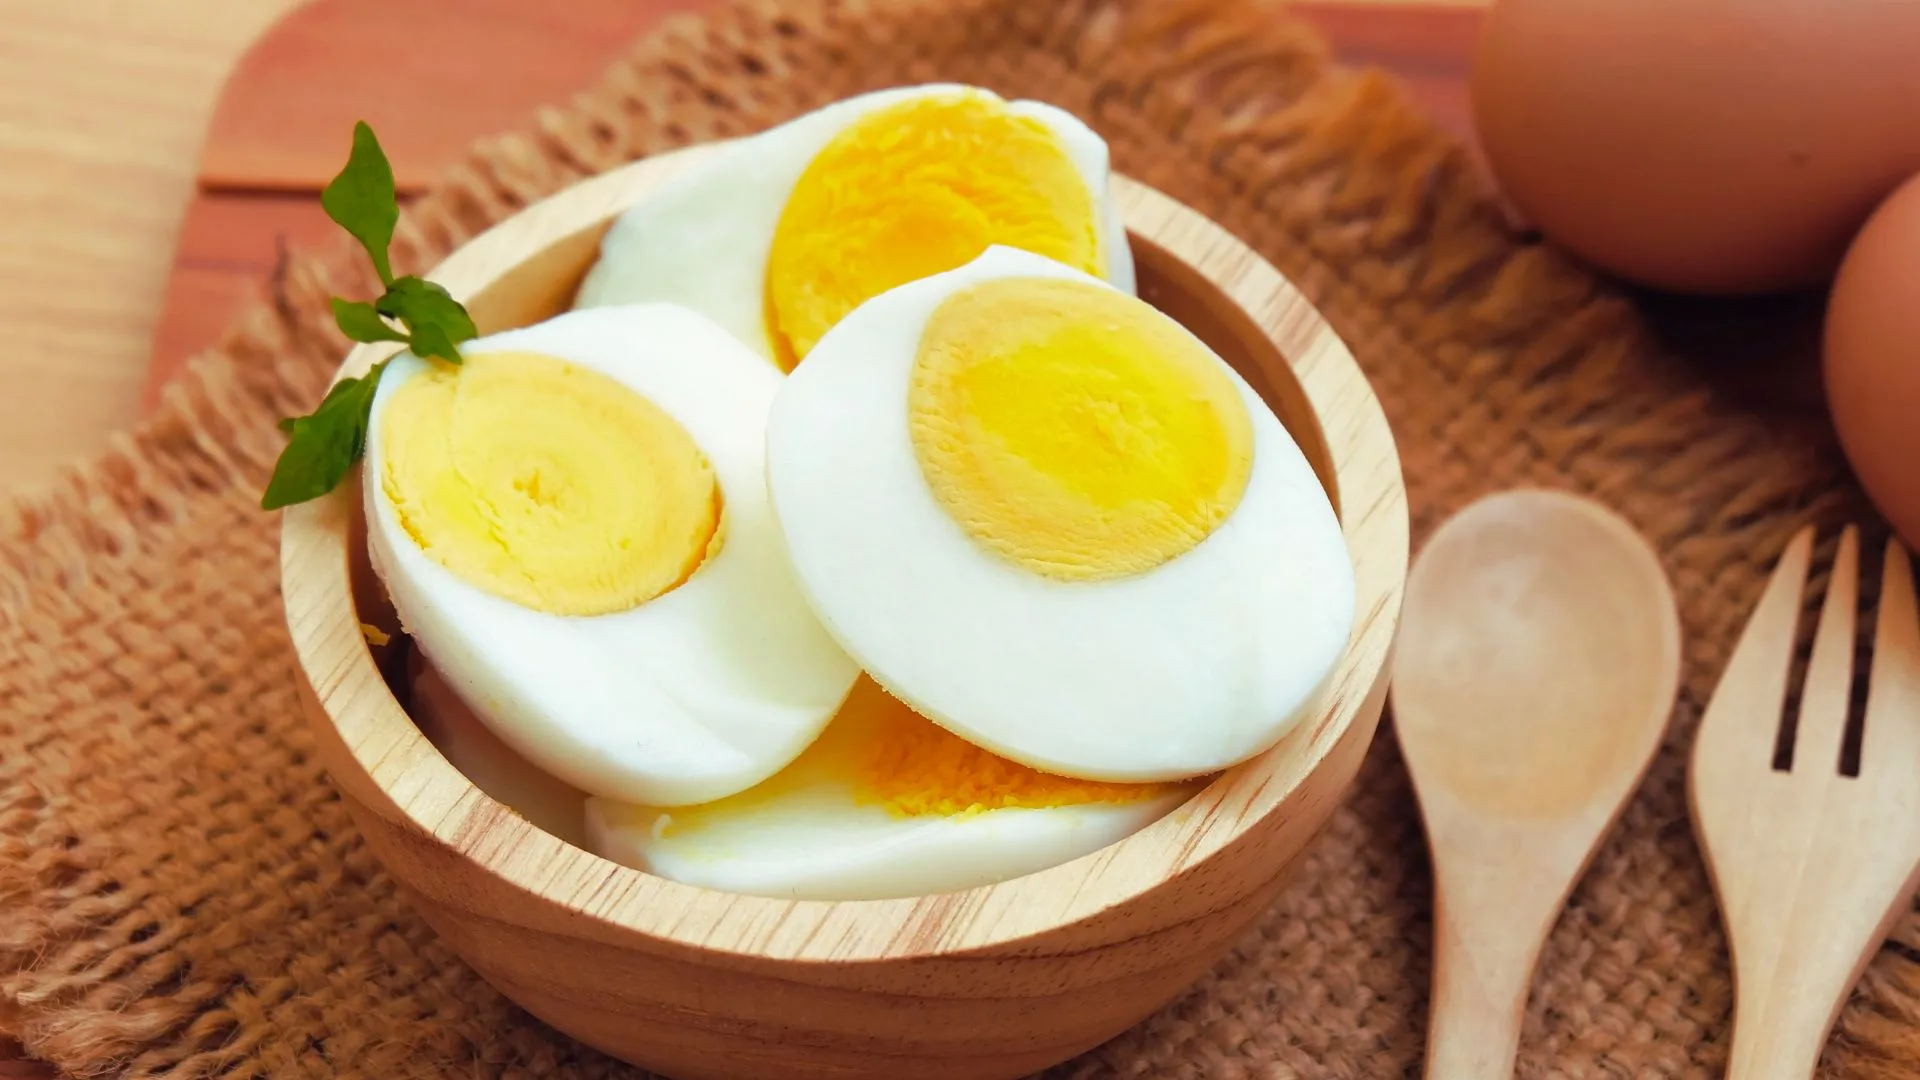 Kalori Telur Rebus Menjaga Kesehatan dan Mendukung Program Penurunan Berat Badan